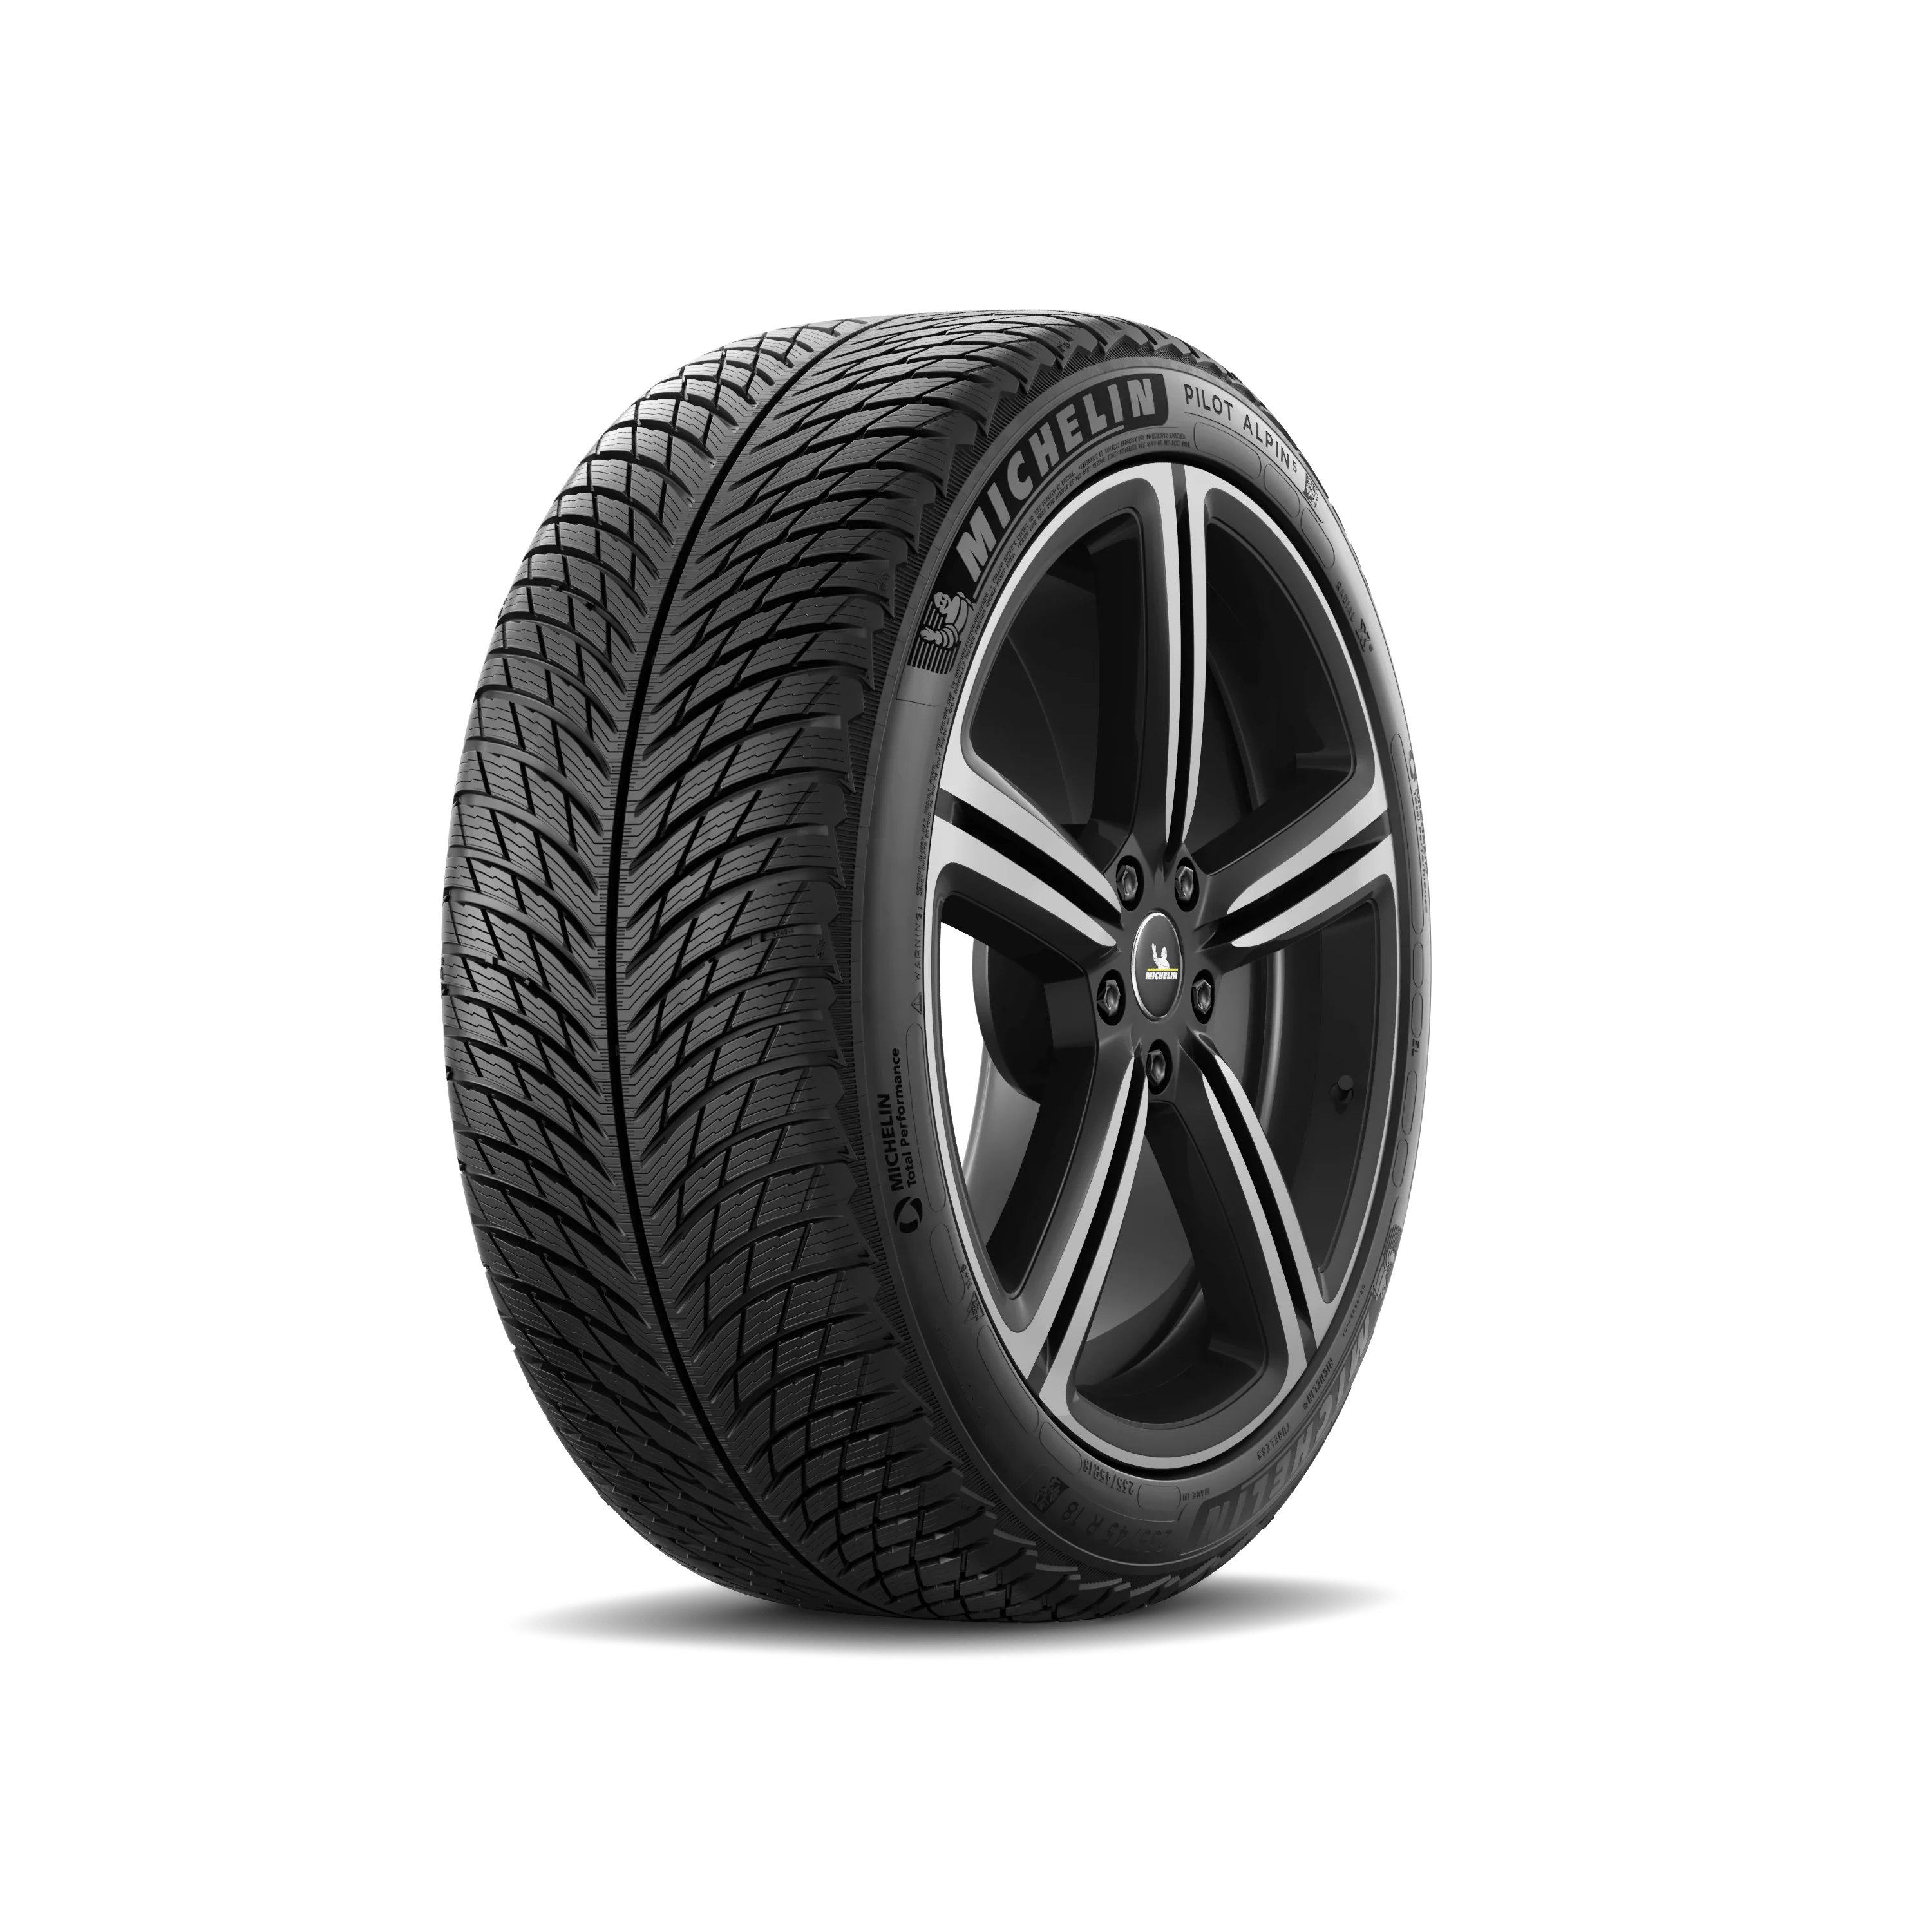 Michelin Michelin 225/60 R17 103H Pilotalpin5suv XL pneumatici nuovi Invernale 